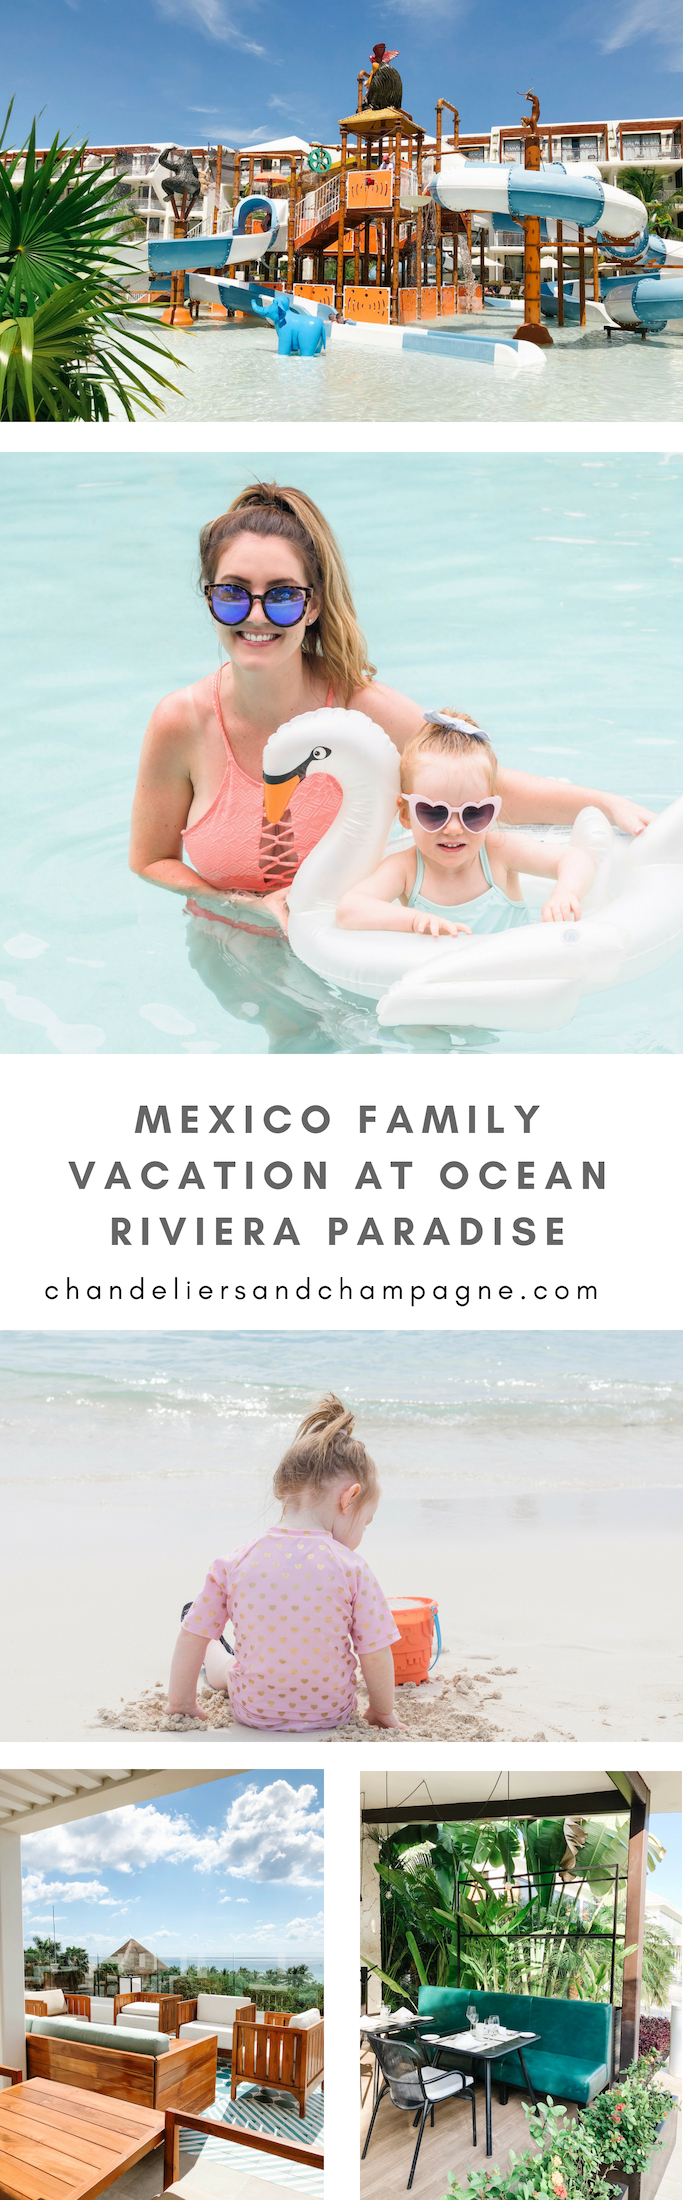 Ocean Riviera Paradise Mexico family vacation - Riviera Maya family-friendly resorts - Ocean Riviera Paradise Resort in Riviera Maya, Mexico